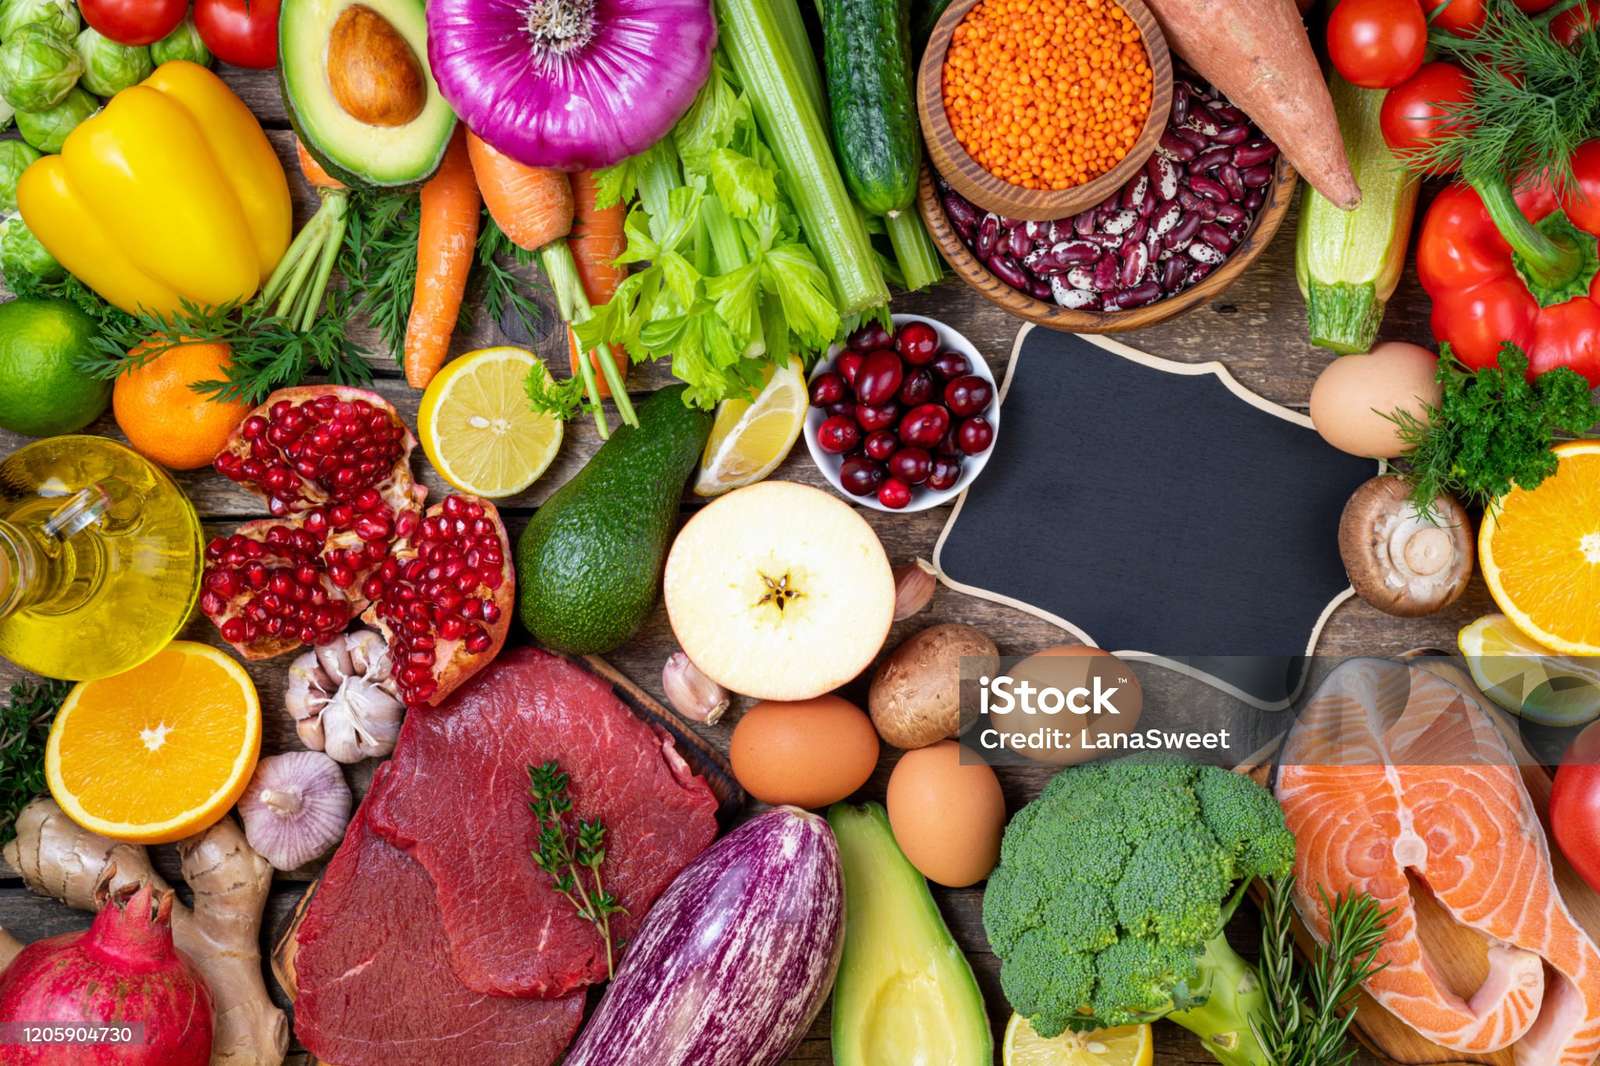 Friss zöldségek, gyümölcsök, húsok és halak az asztalon online puzzle